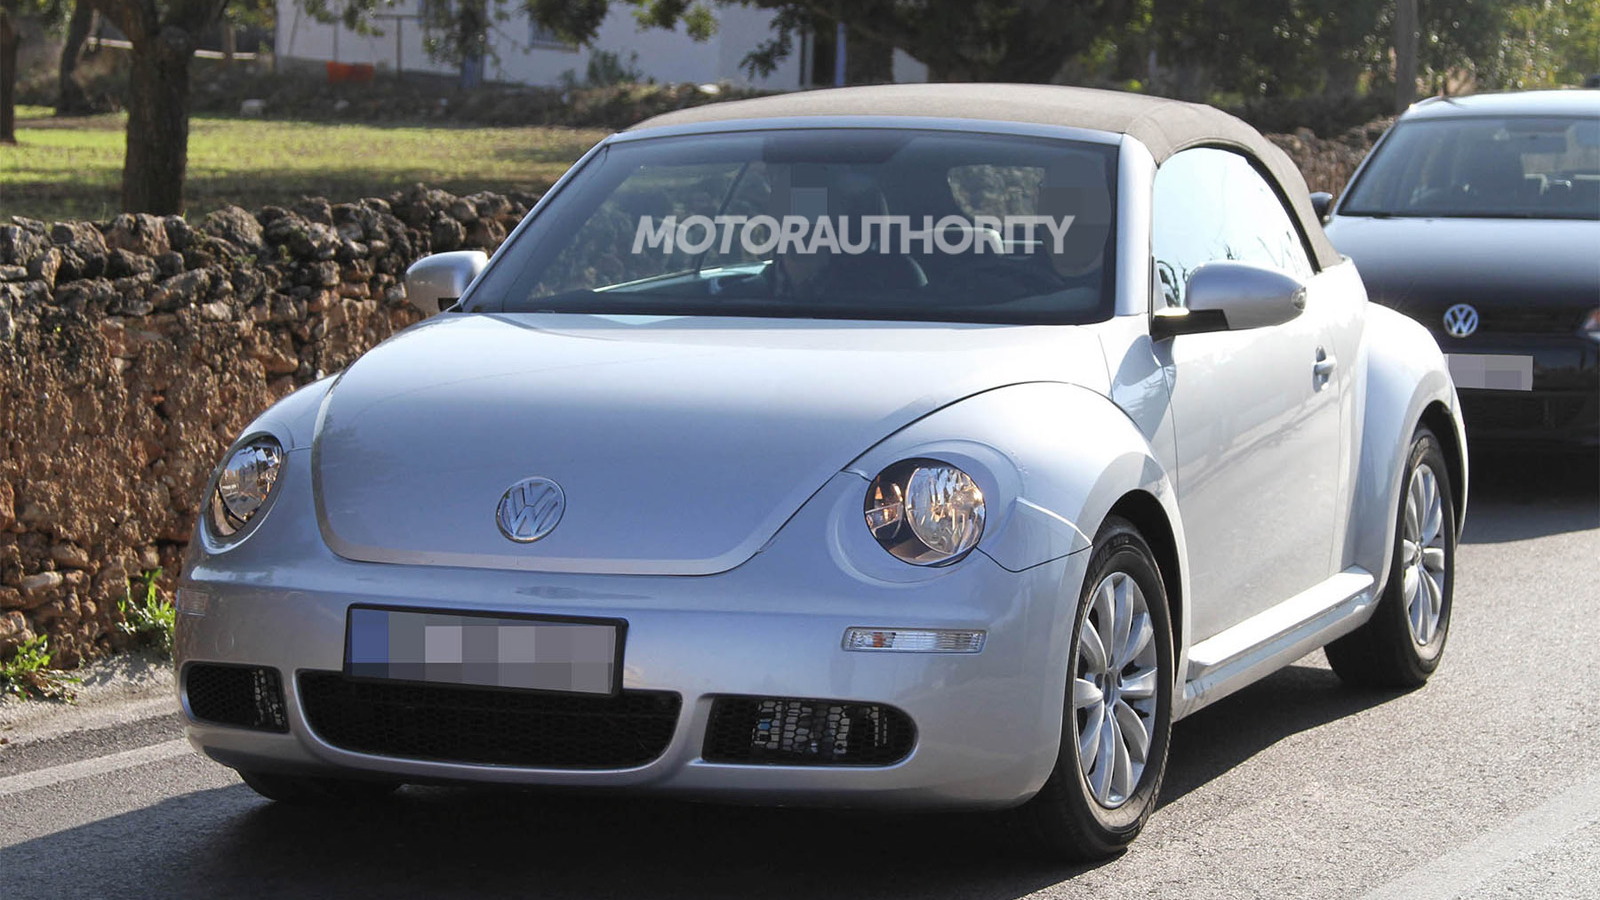 2013 Volkswagen Beetle Convertible spy shots